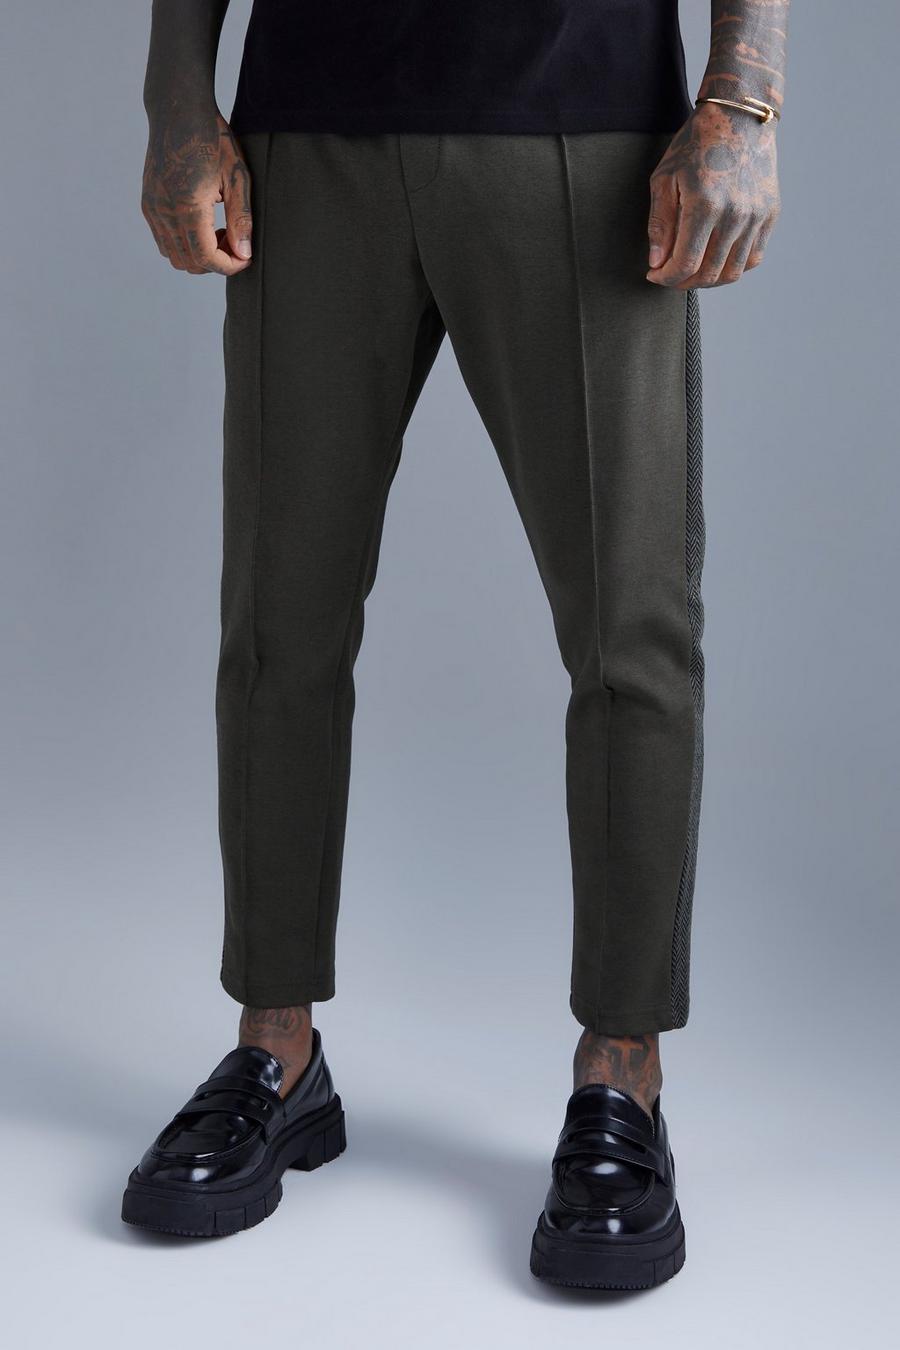 Pantalón deportivo ajustado con panel lateral y alforza, Khaki caqui